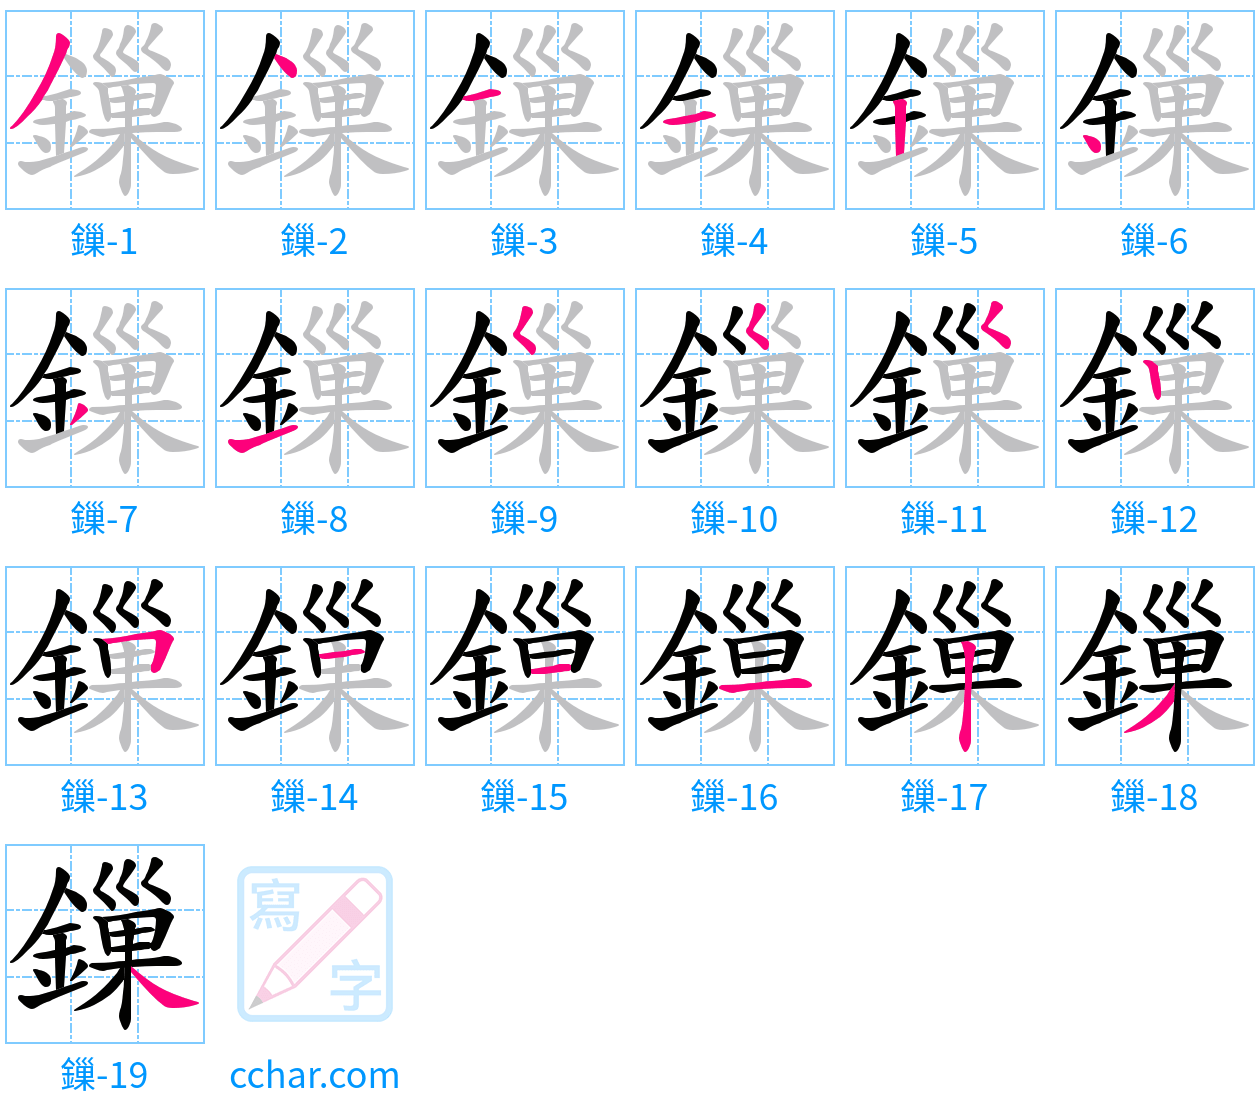 鏁 stroke order step-by-step diagram